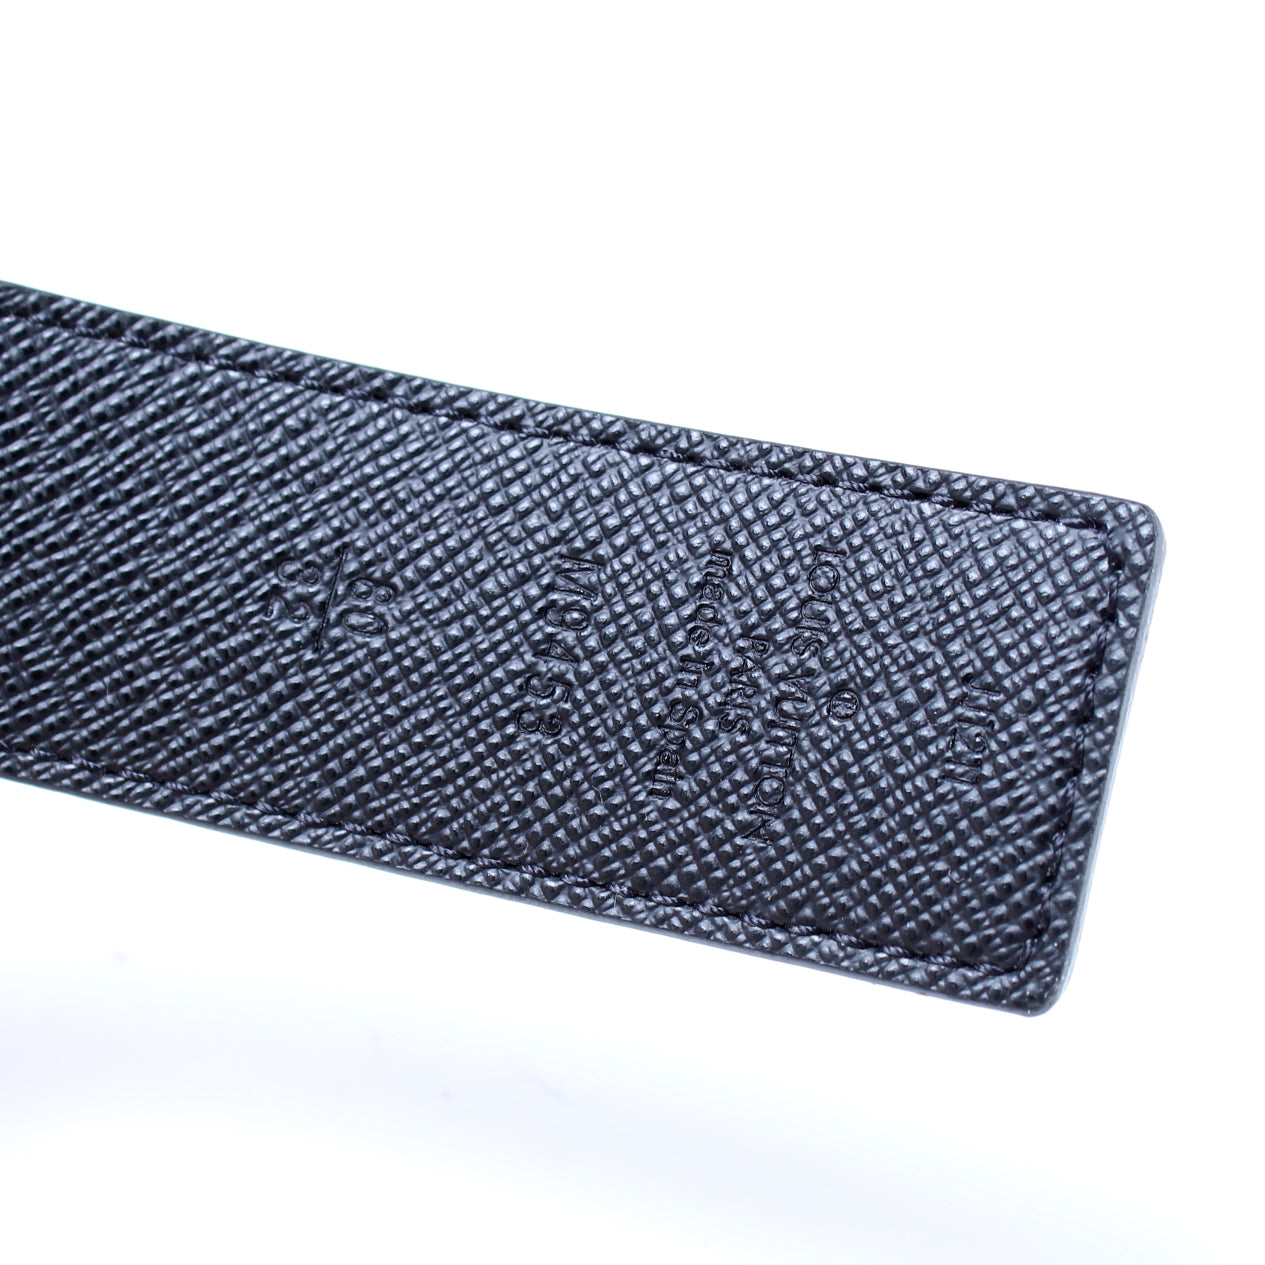 Louis Vuitton reversible men’s belt (80/32)